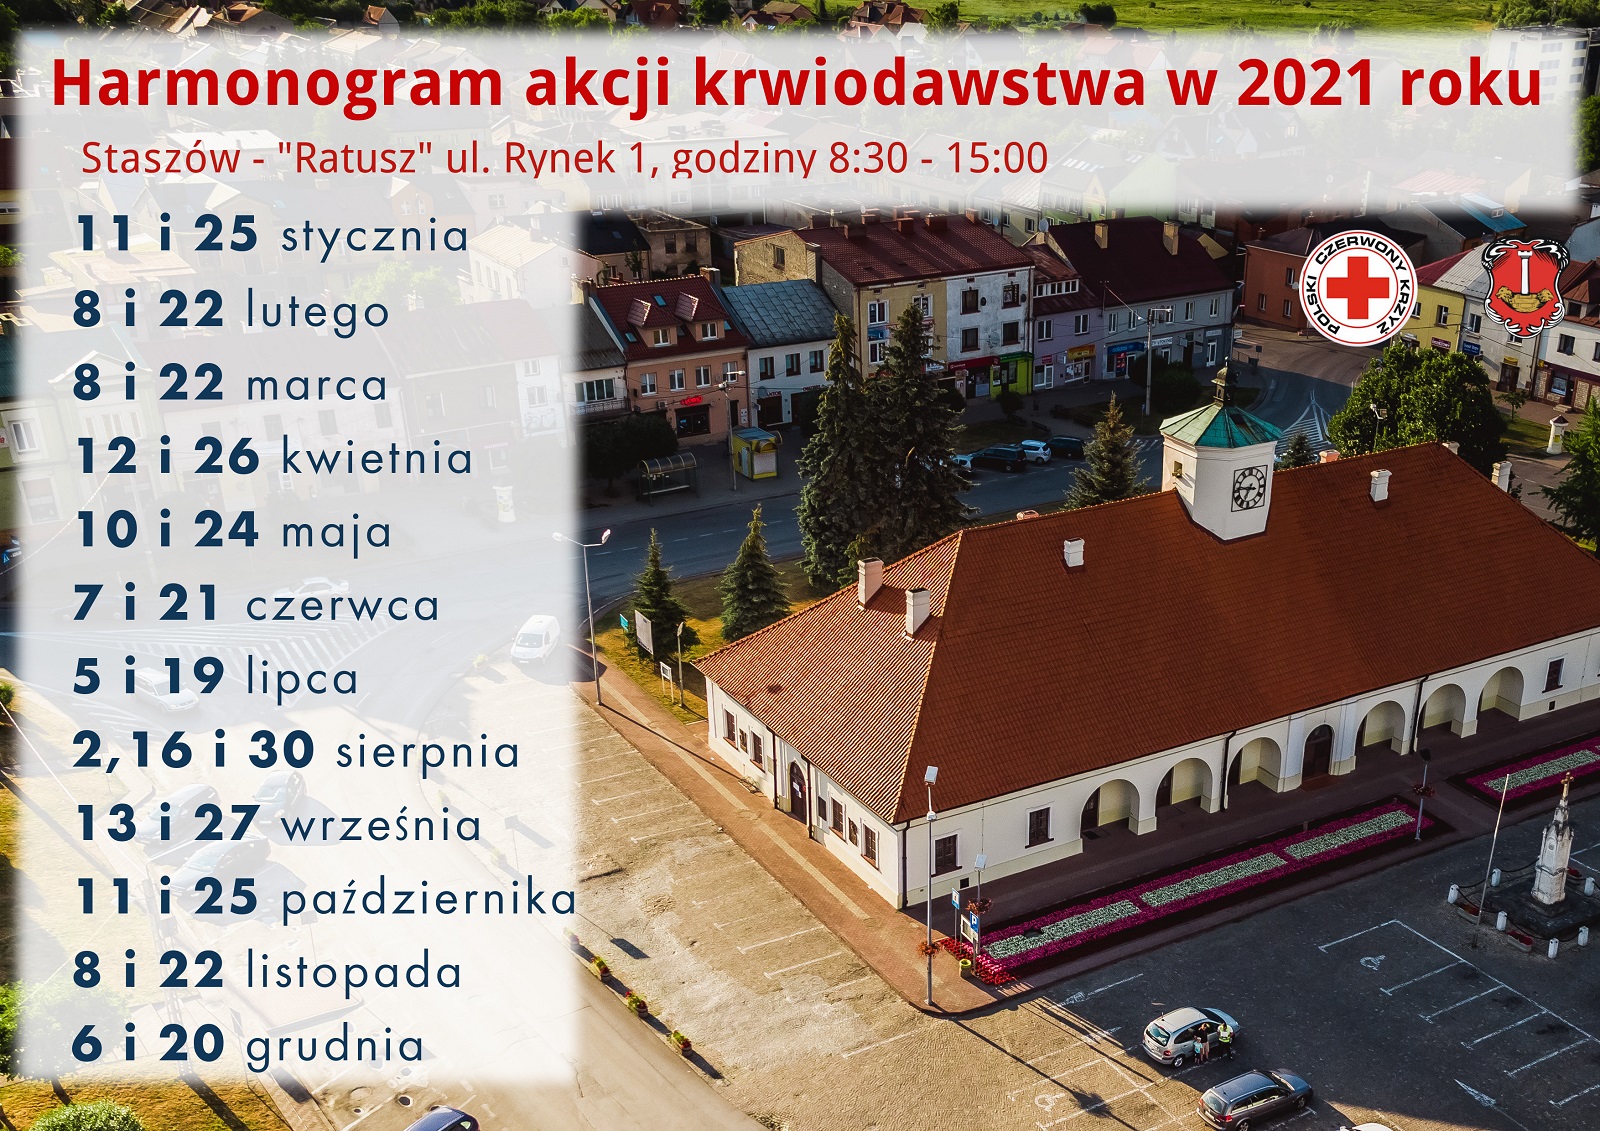 Harmonogram akcji krwiodawstwa w Staszowie w 2021 roku